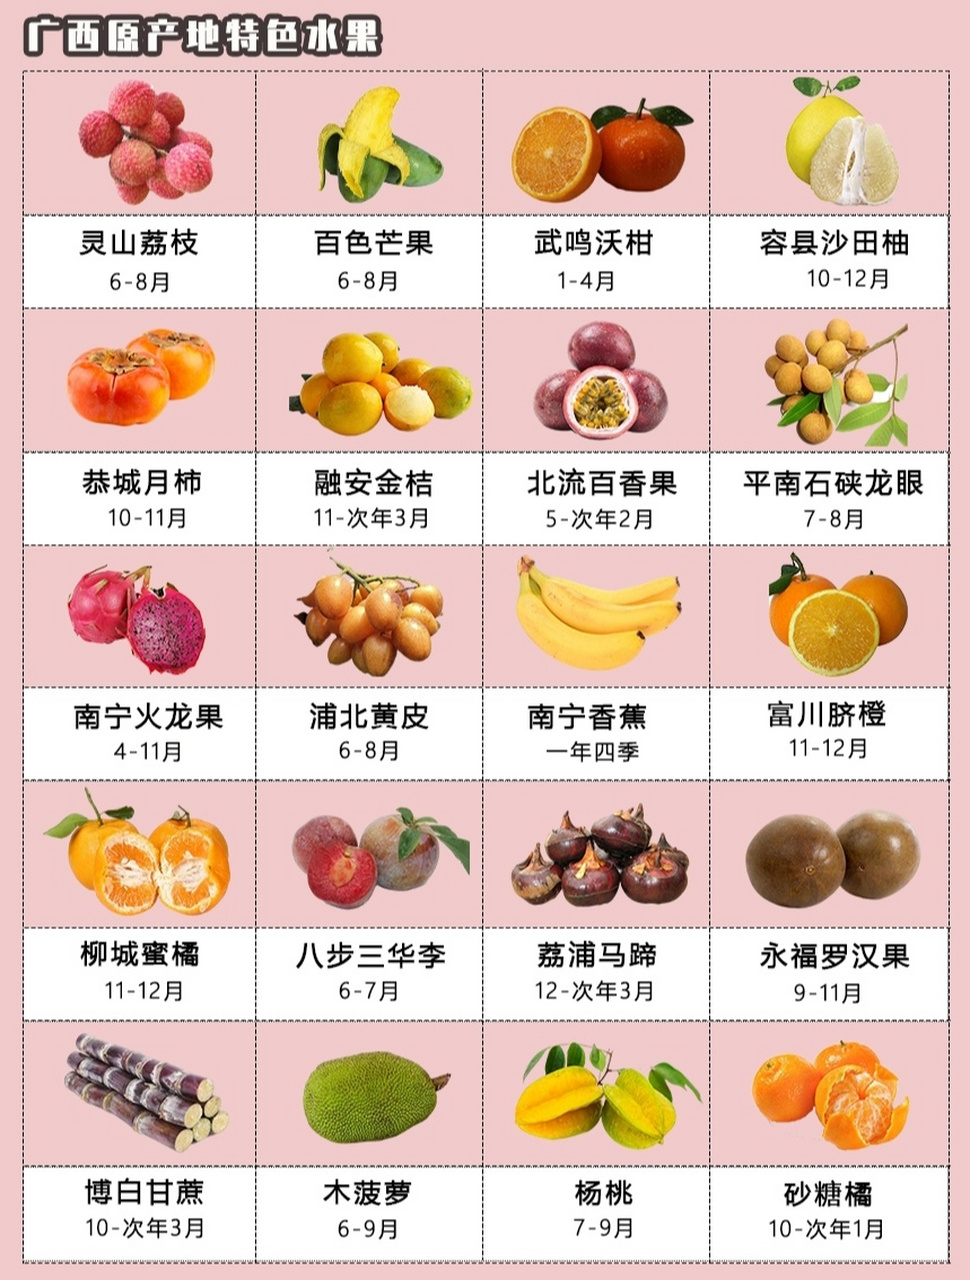 各种水果也开始陆陆续续成熟 快来广西吃应季水果 93【灵山荔枝 